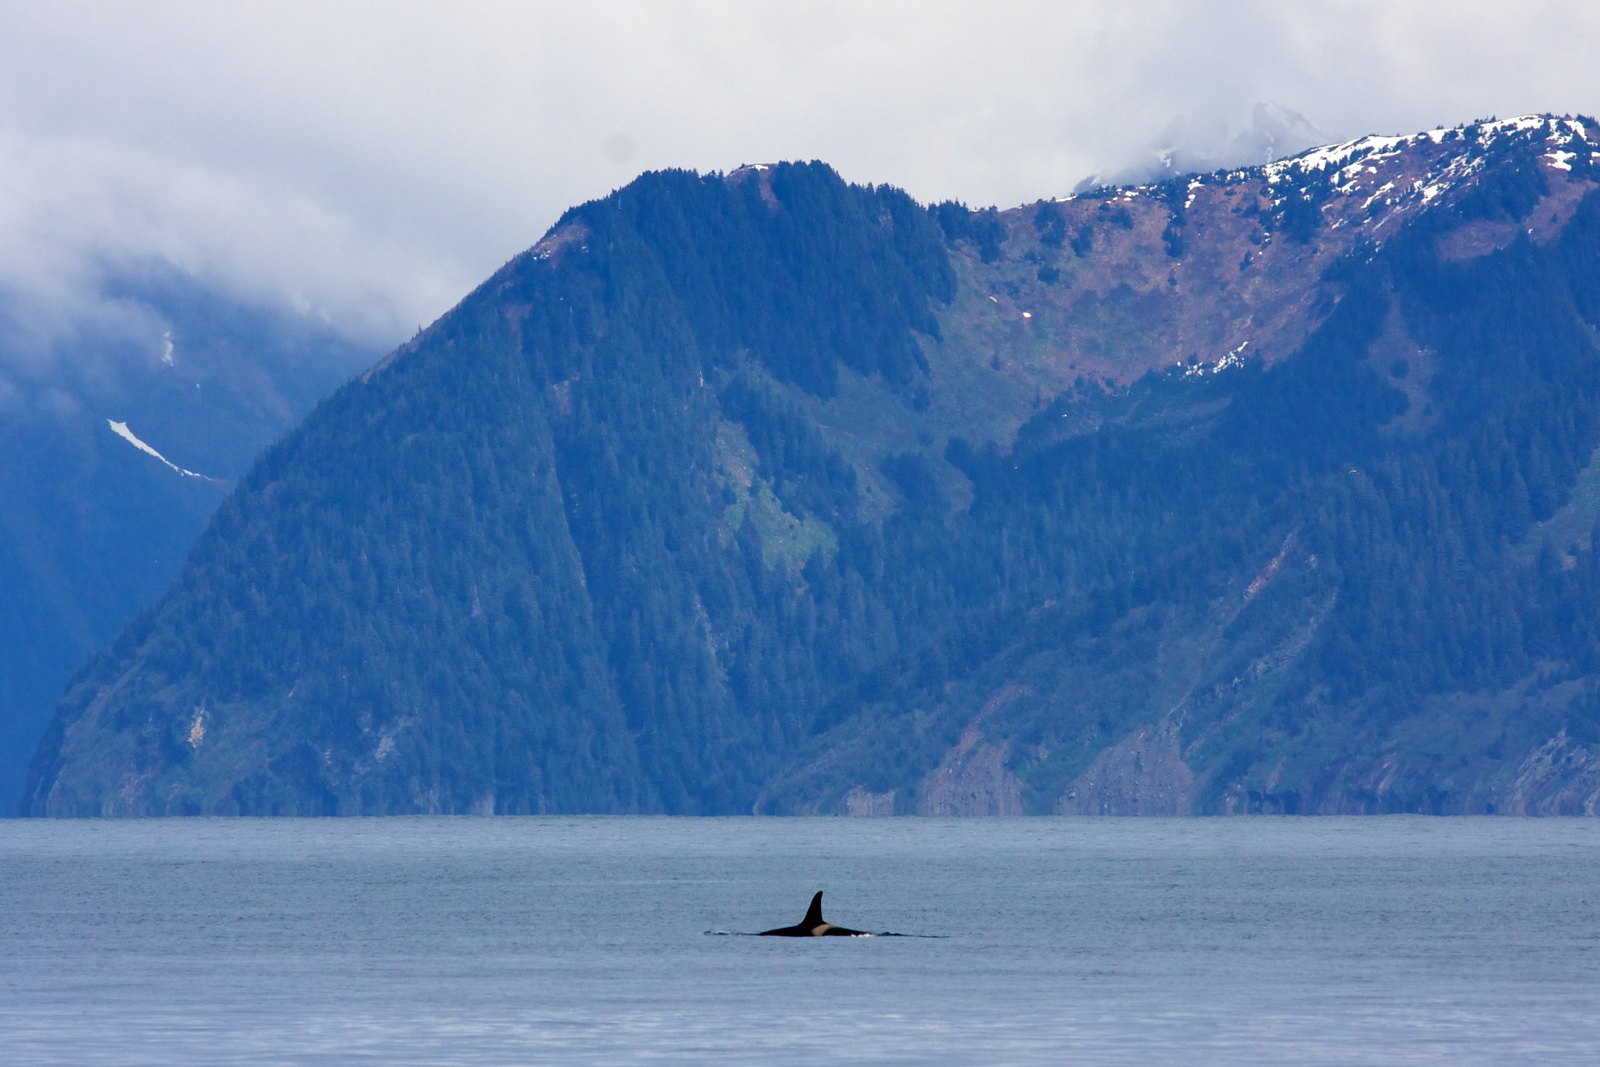 Orca at Kenai Fjords National Park.